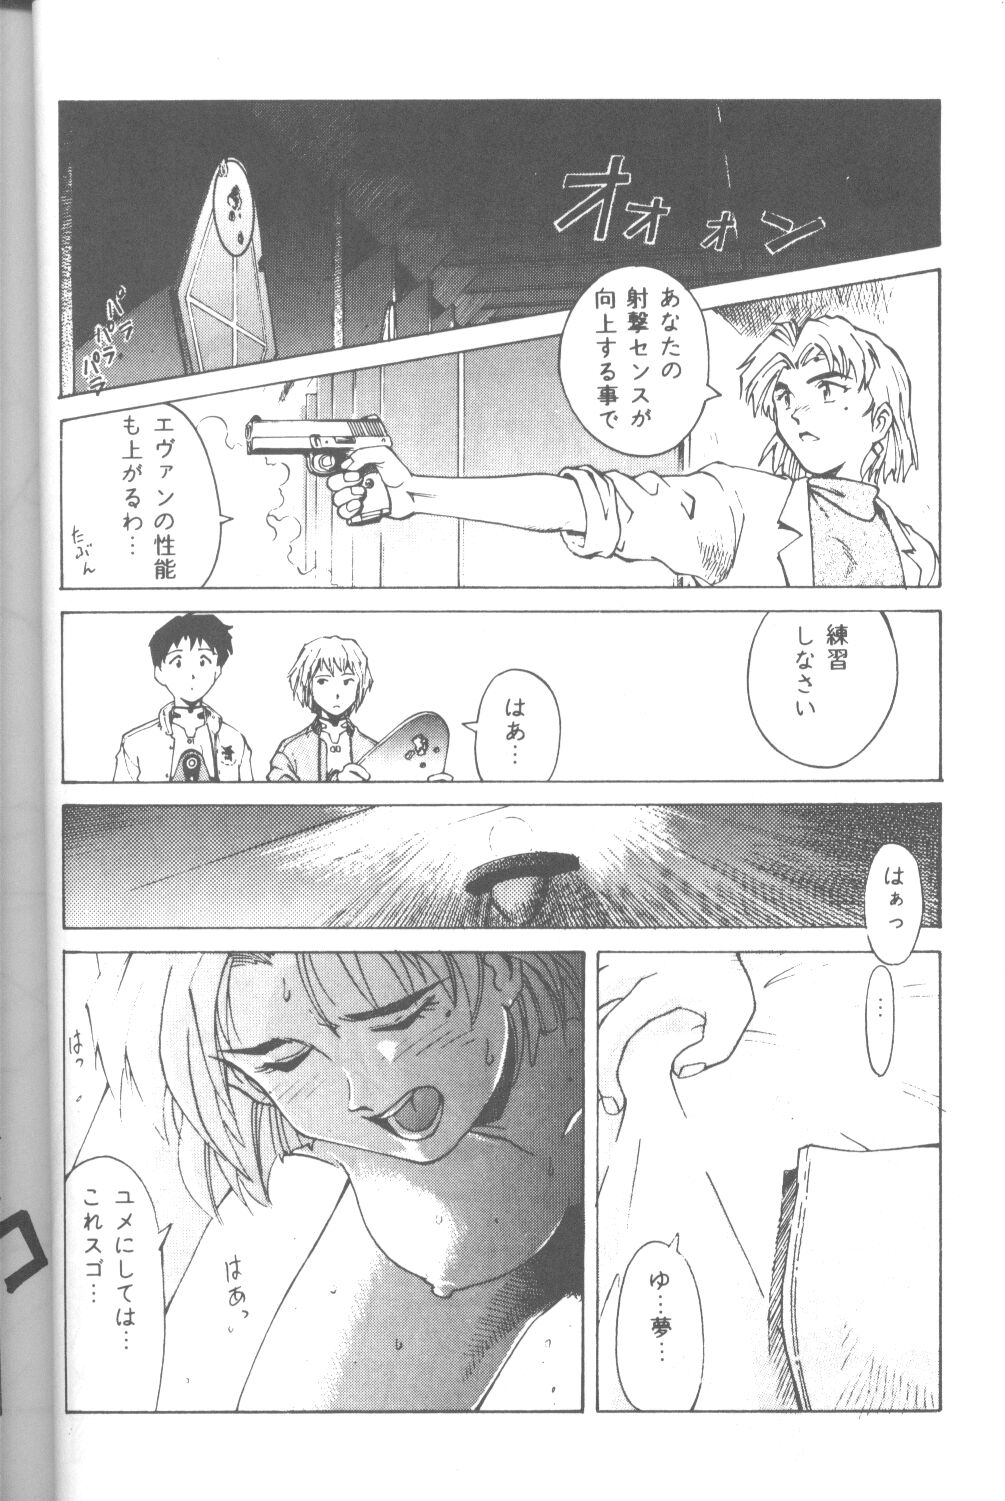 [Takahiro Kutugi] Friends Yes We're (Evangelion) page 39 full